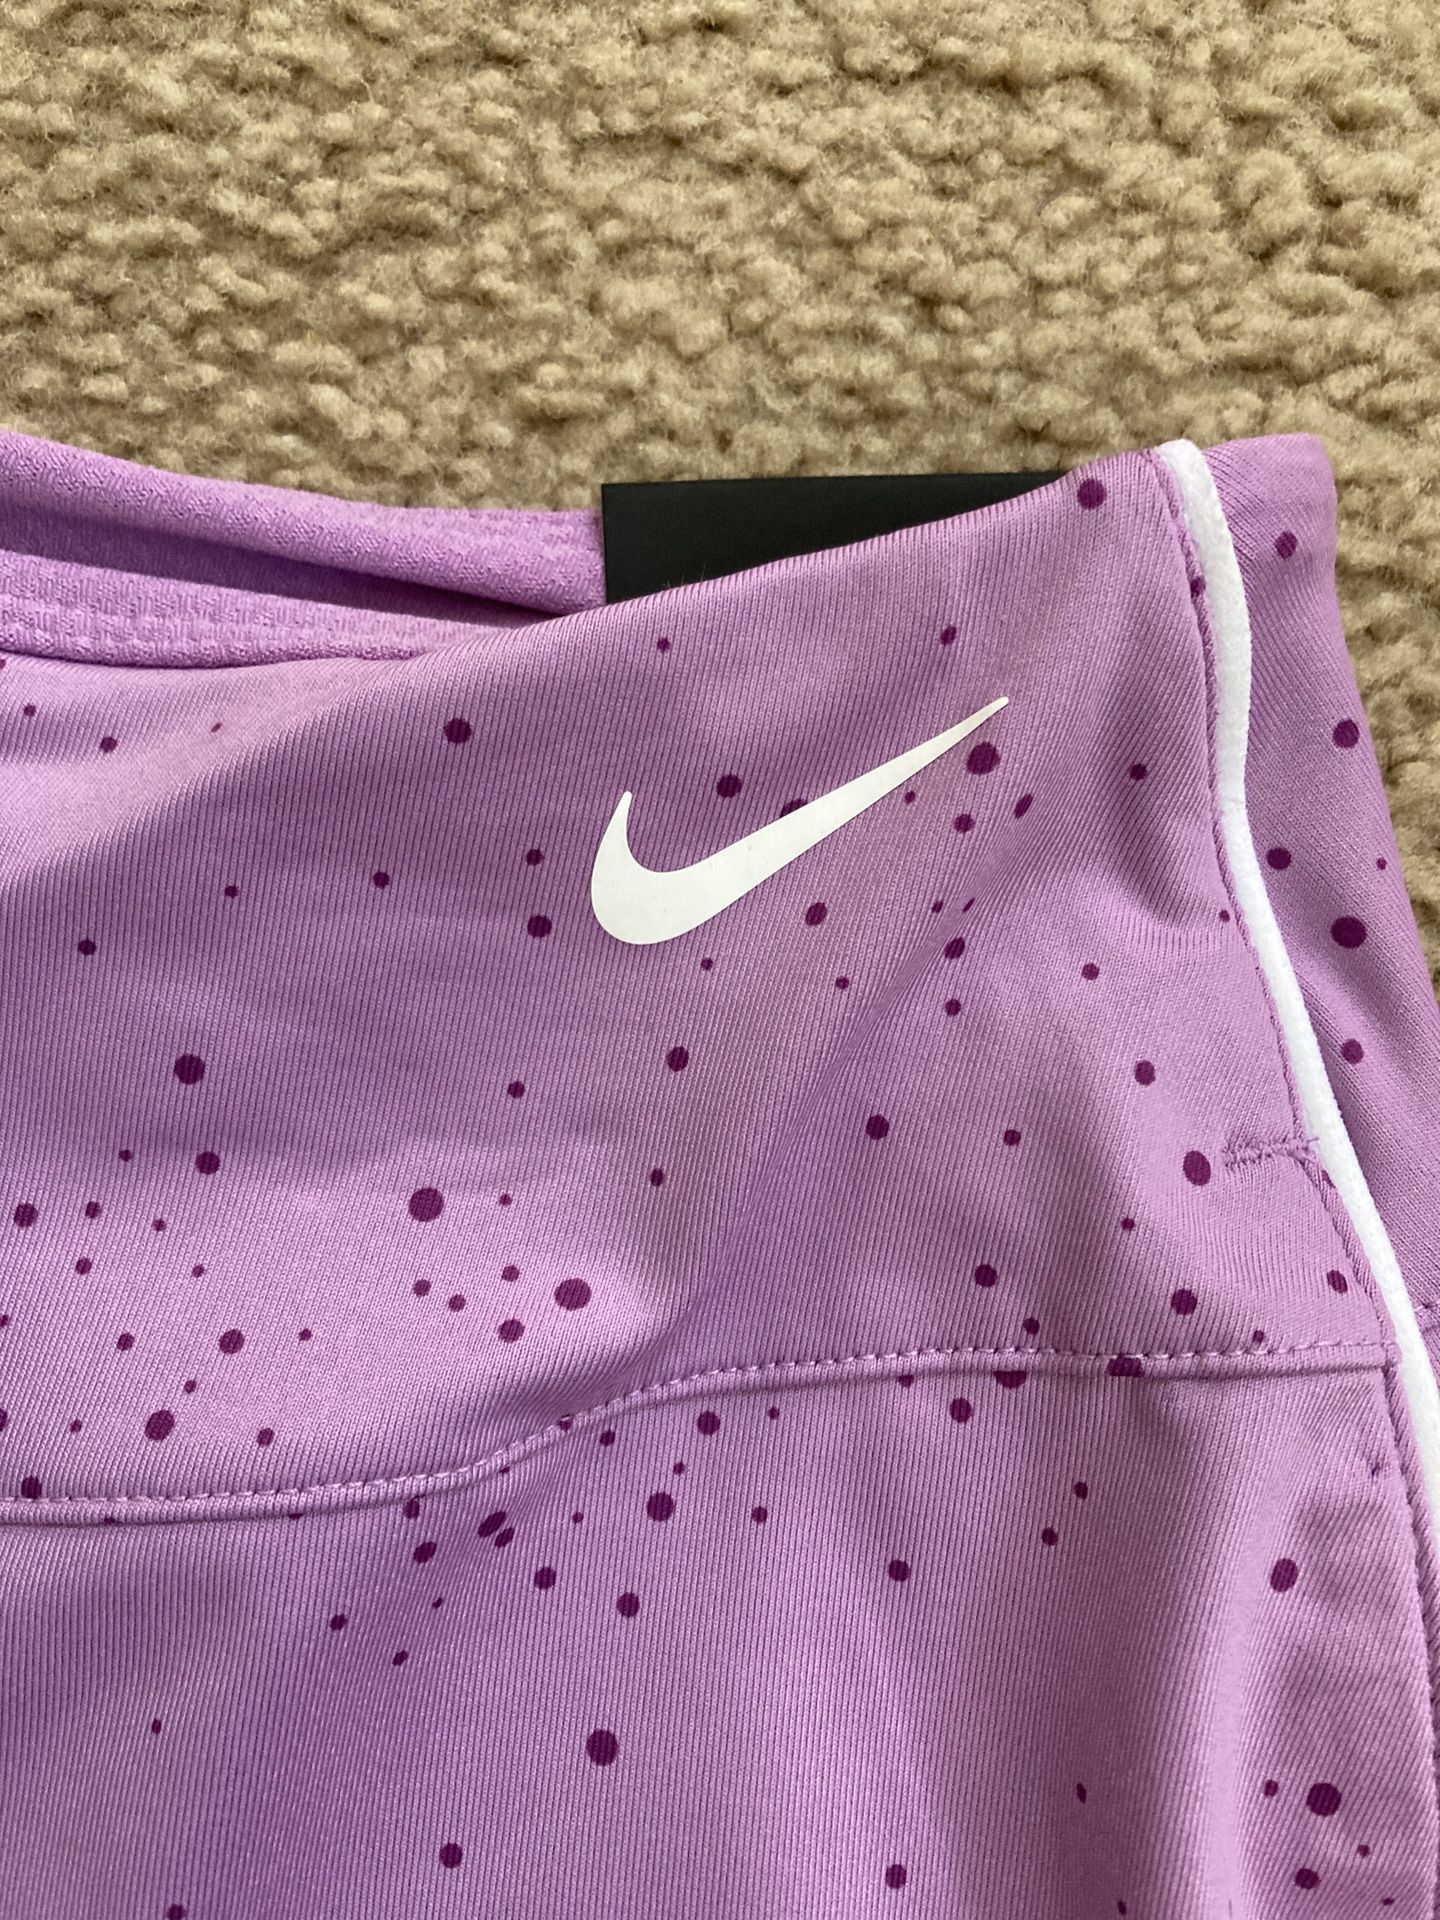 Nike Dri-fit Golf Girls Standard Fit Skirt Skort Purple NWT Size XL NWT